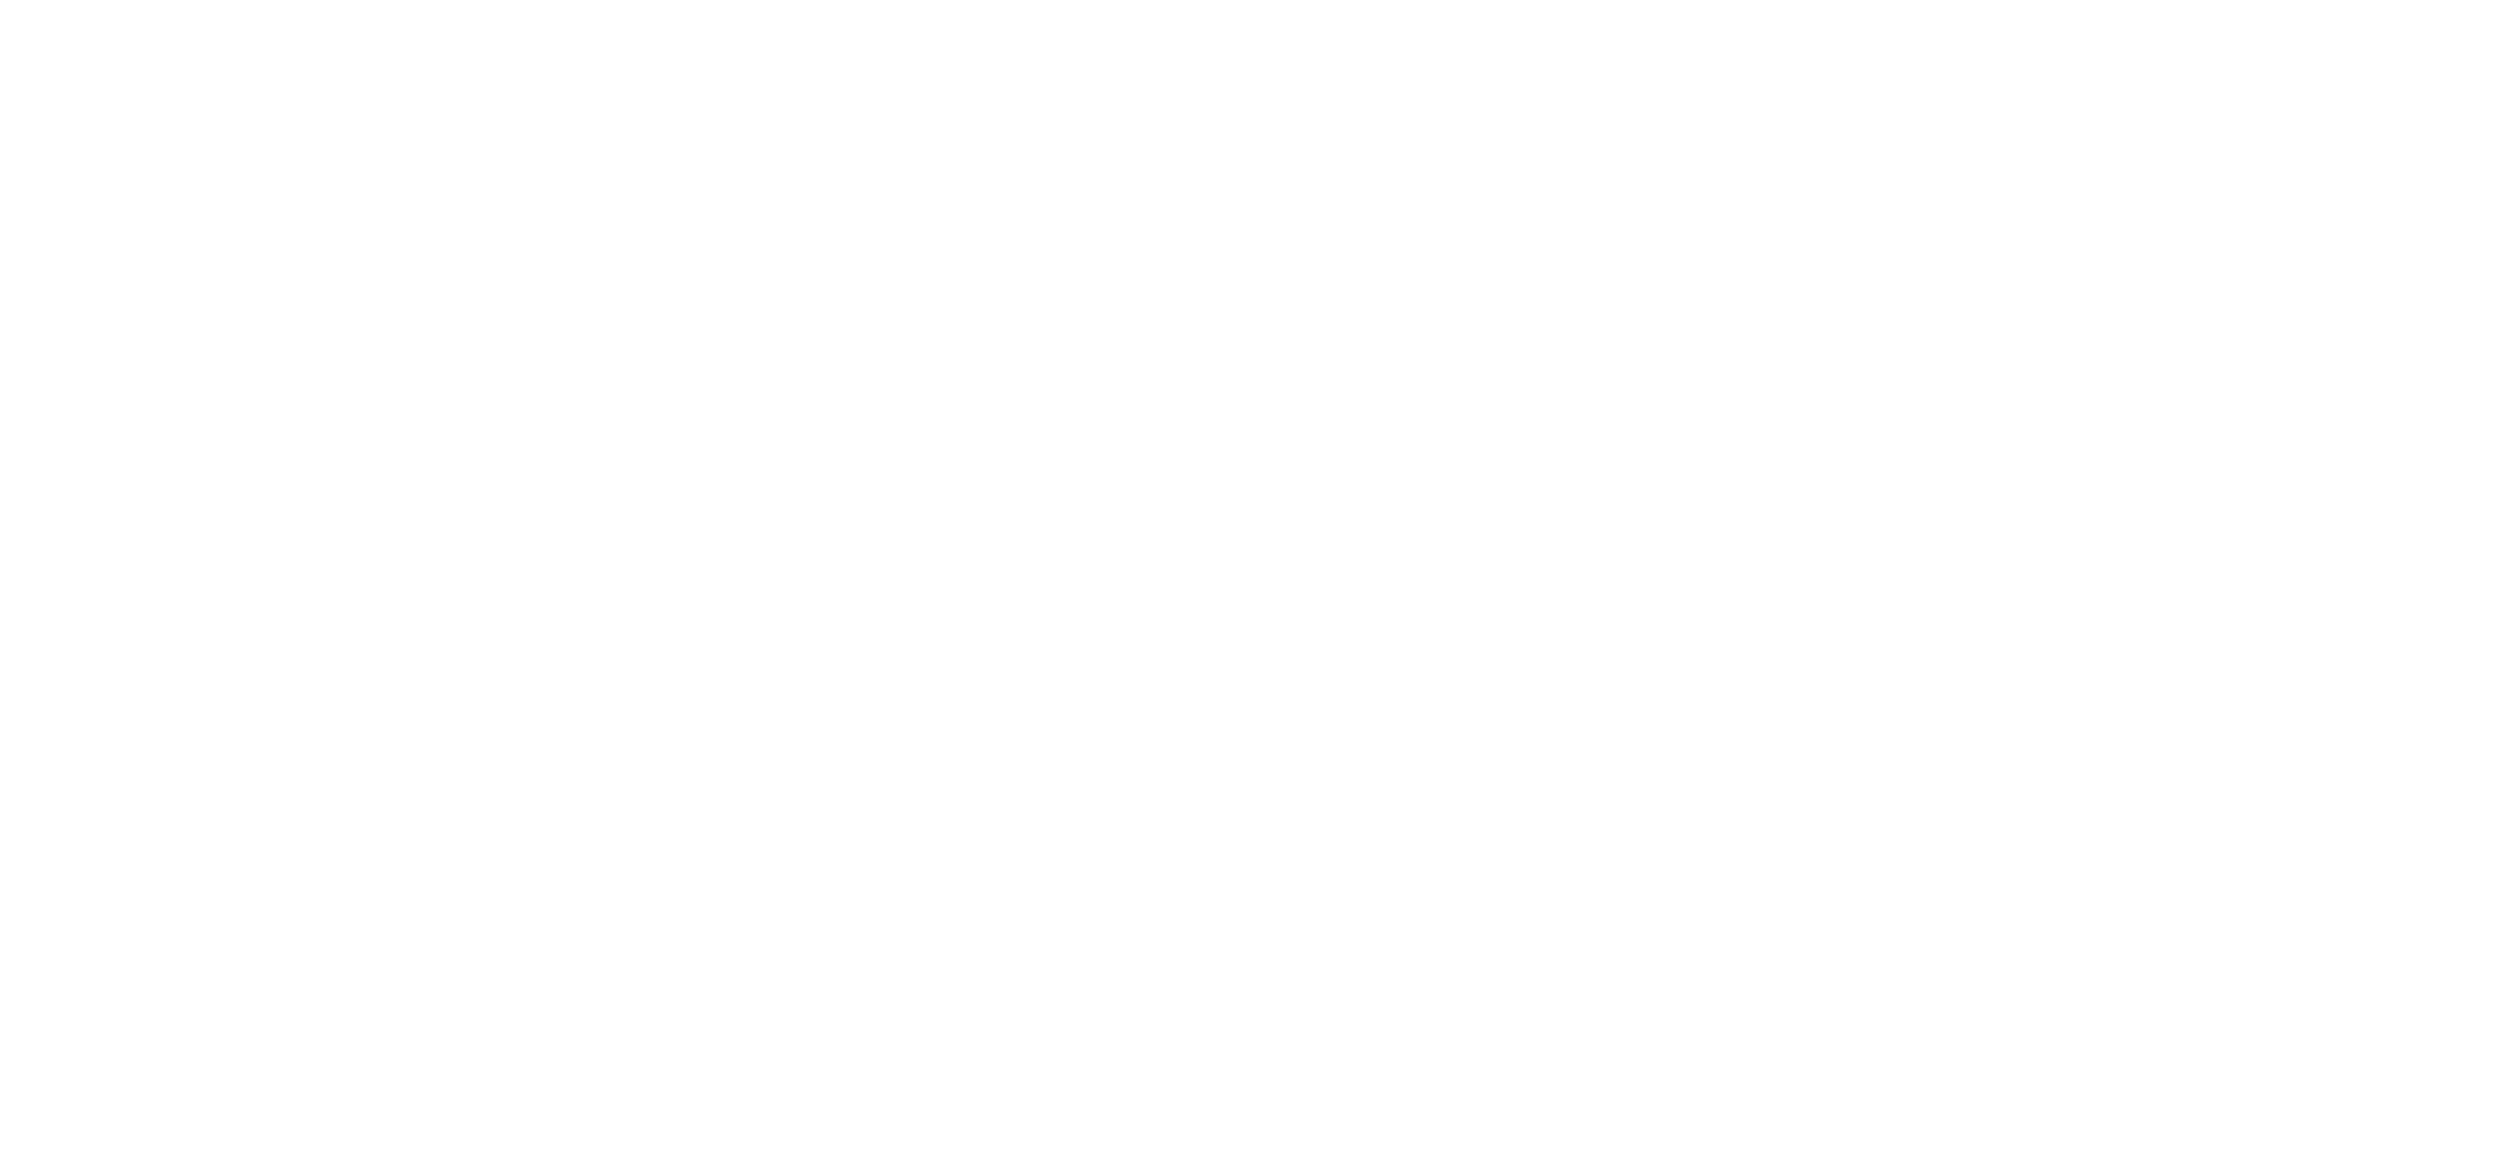 Ellen Hendriksen Social Proof — Dunkin Brands (White).png